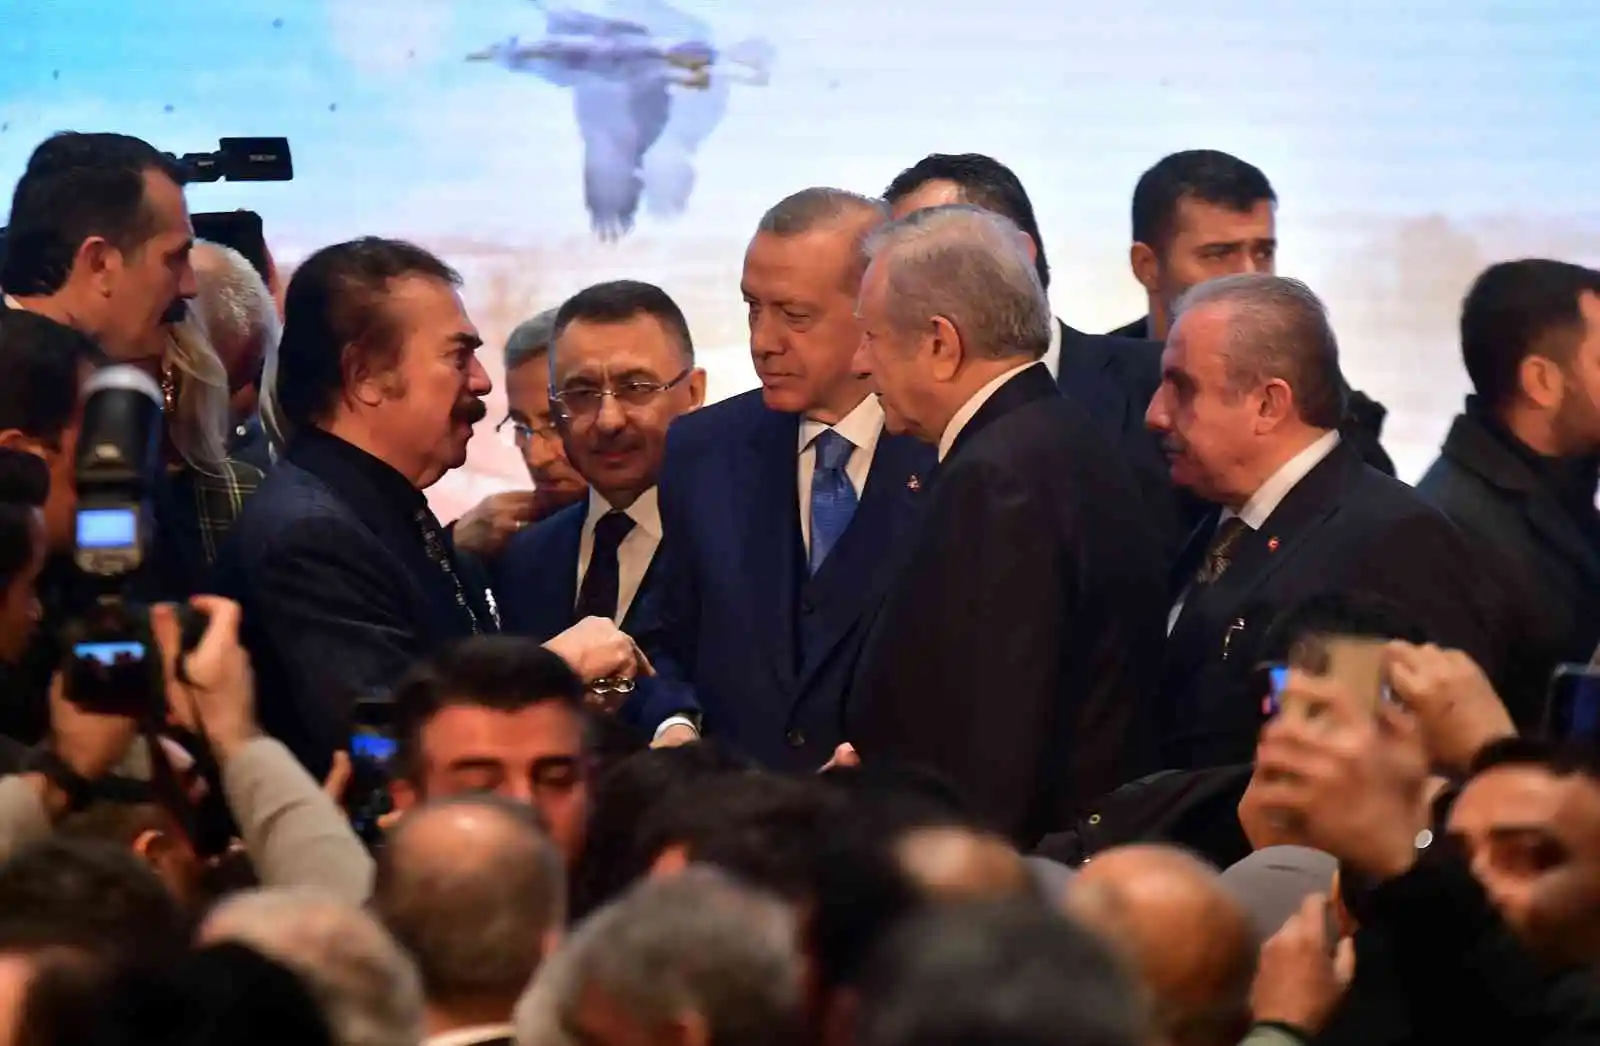 Cumhurbaşkanı Erdoğan: “Rami’yi sadece kütüphane değil pek çok faaliyetin yapılabileceği bir kültür merkezi olarak planladık”
